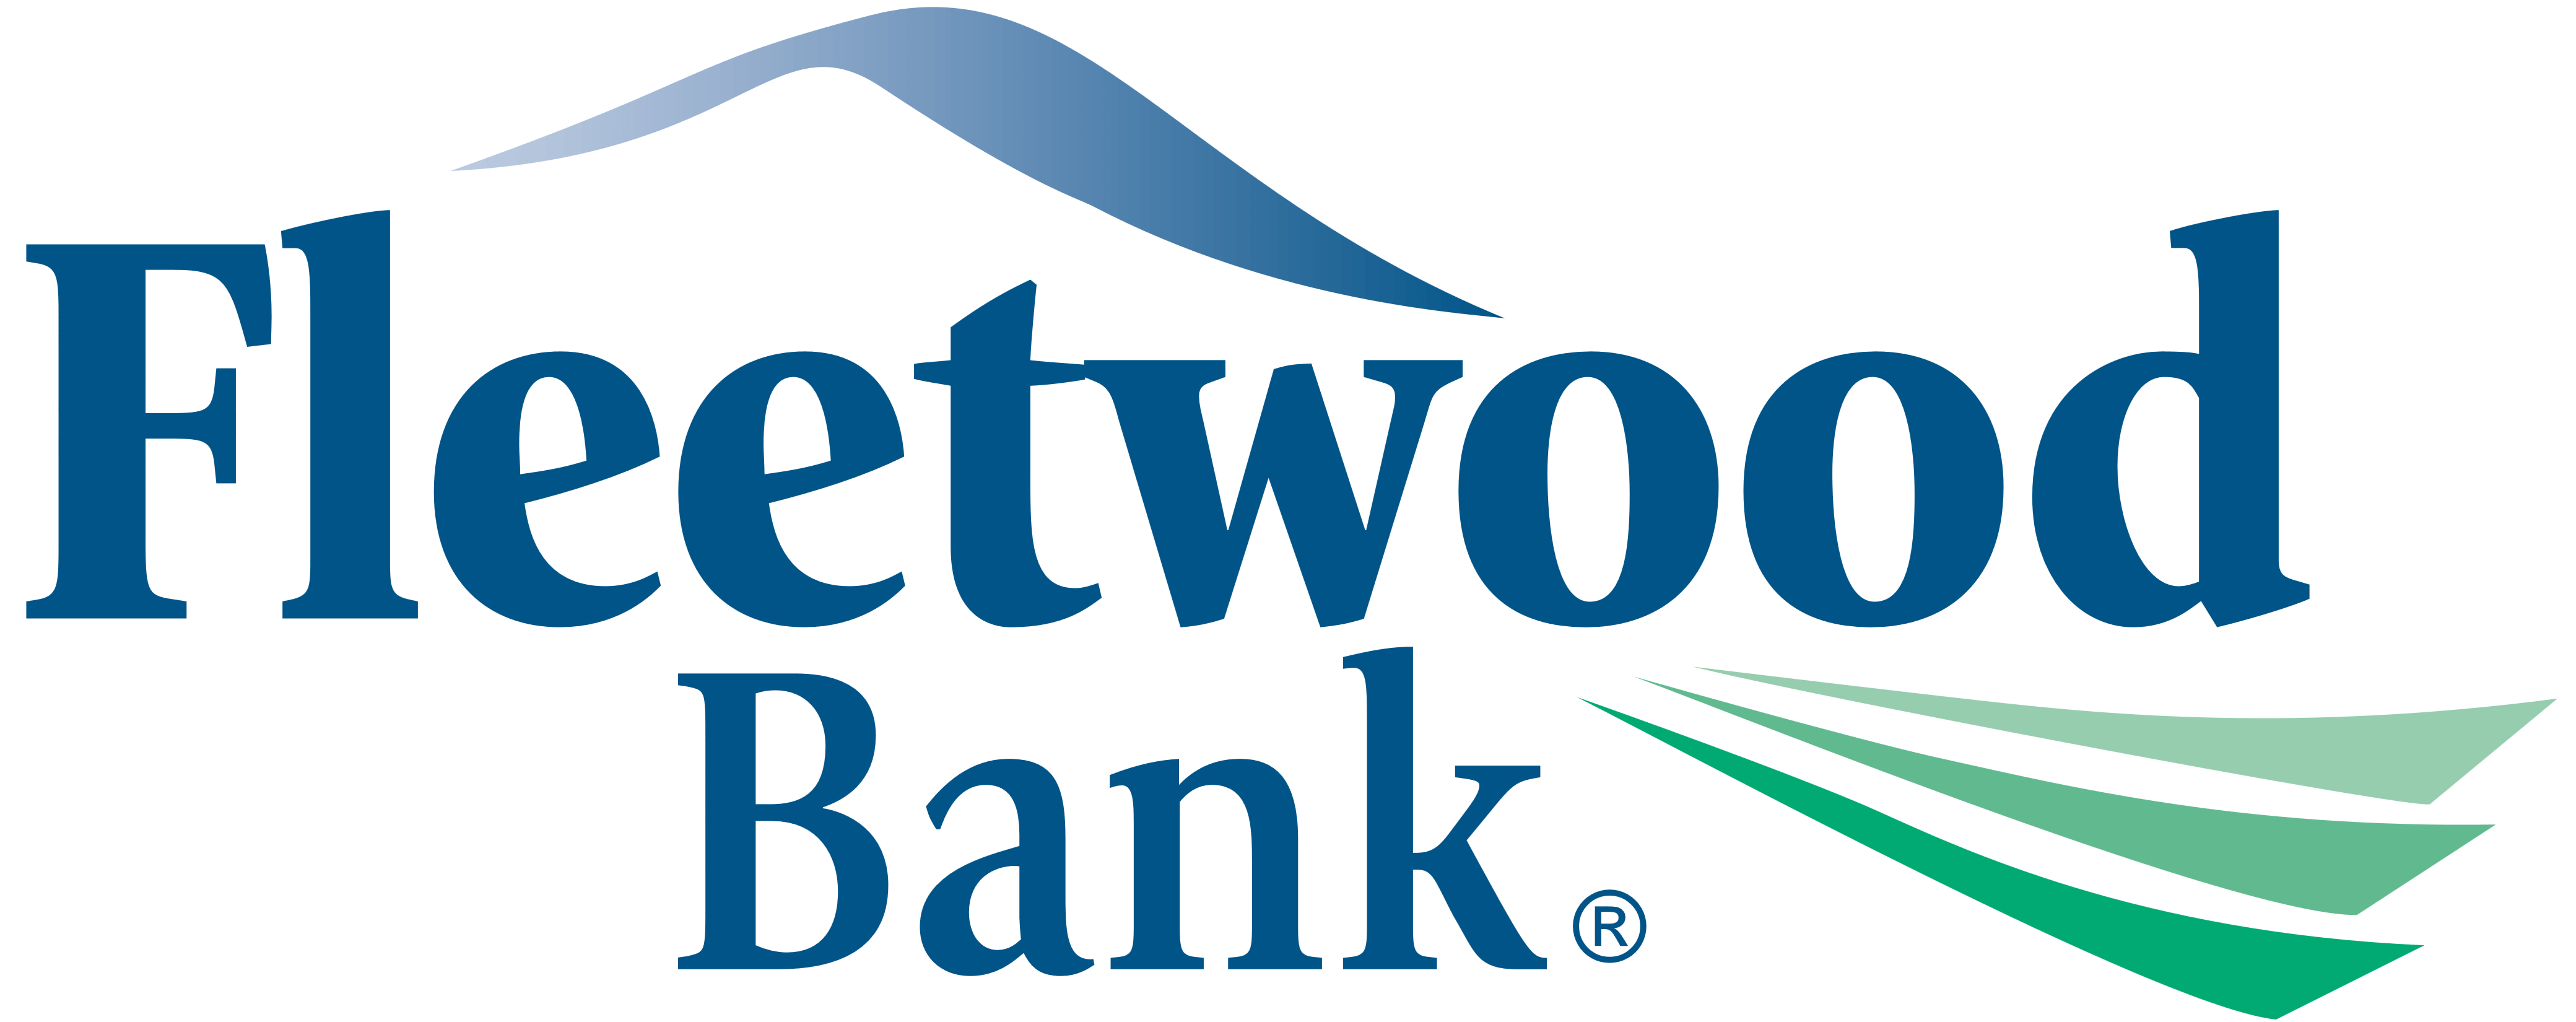 Fleetwood Bank logo, logotype